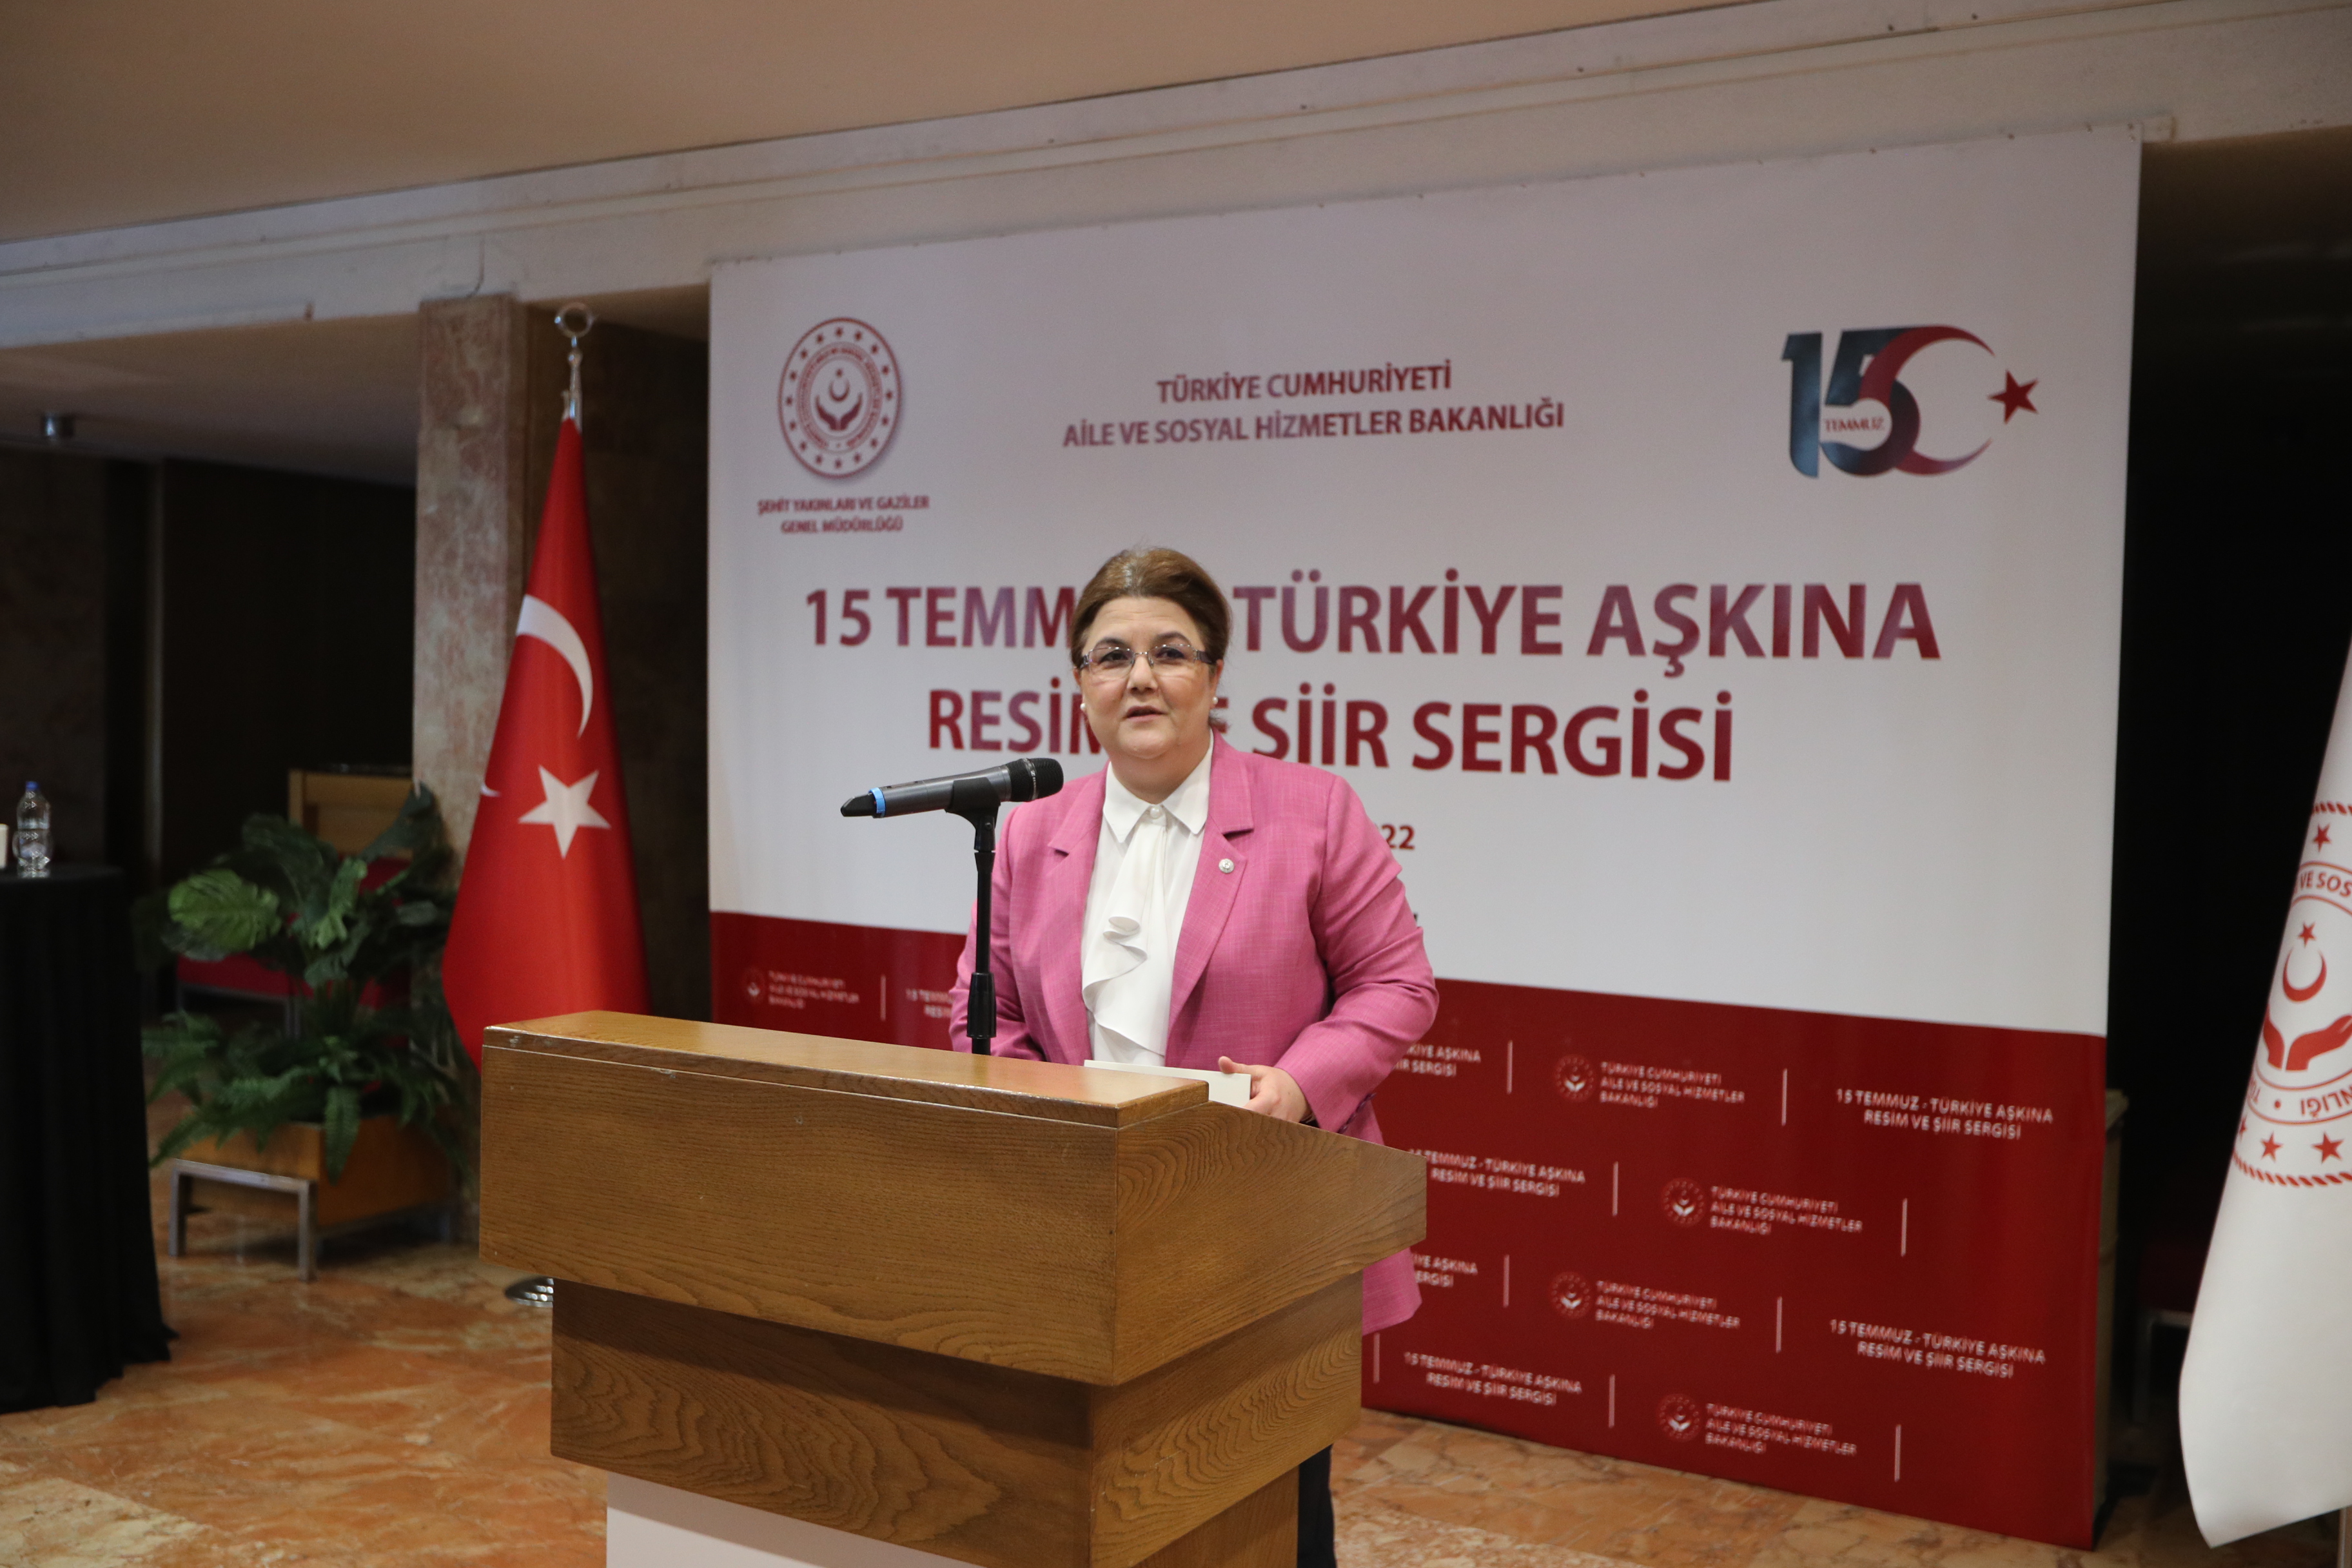 Bakanımız Derya Yanık "15 Temmuz Türkiye Aşkına Resim ve Şiir Sergisi"nin Açılışını Yaptı